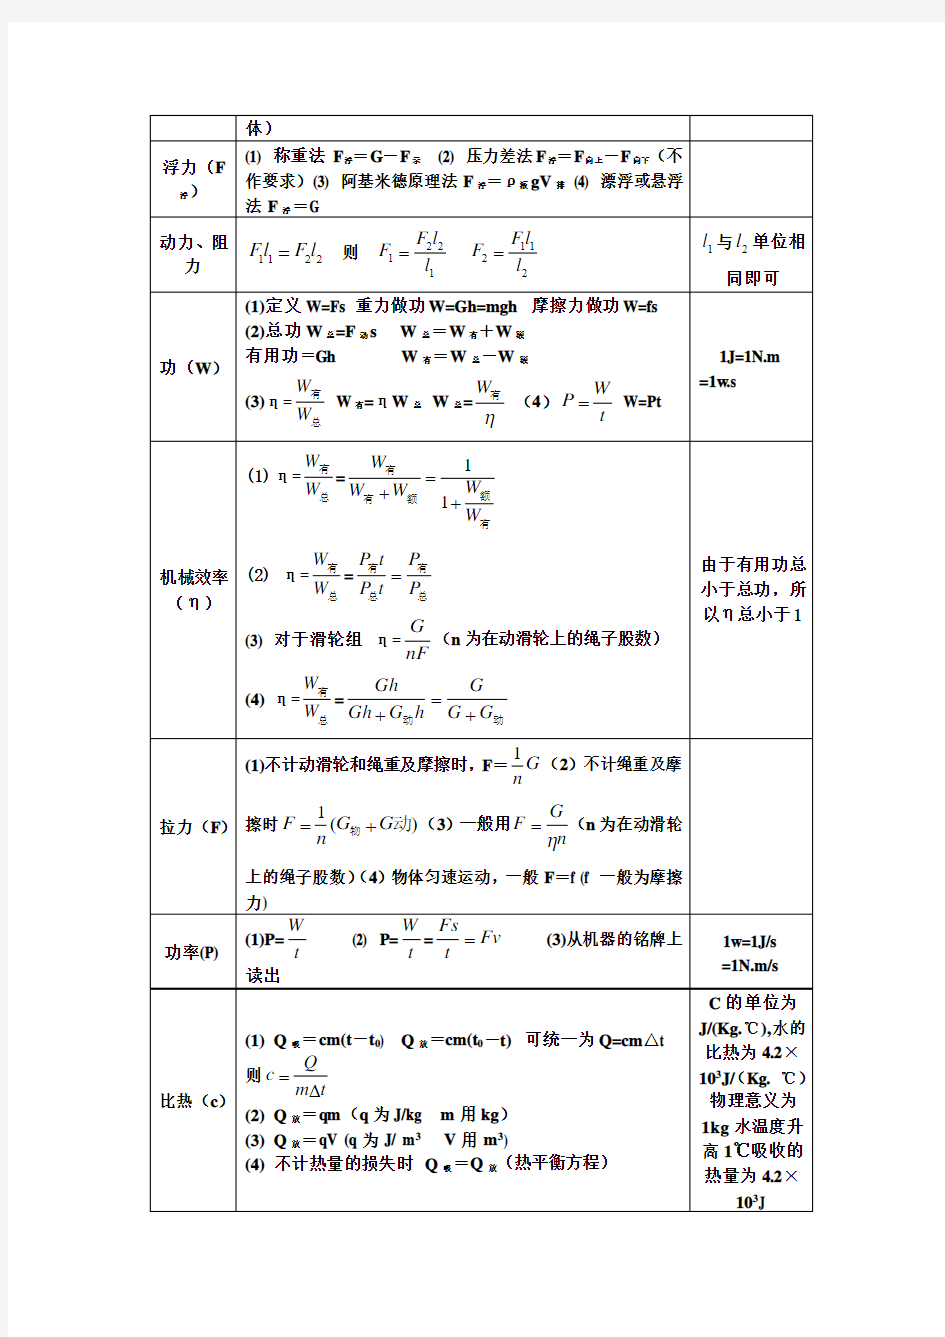 最全最详细初中物理公式总结及详解一览表